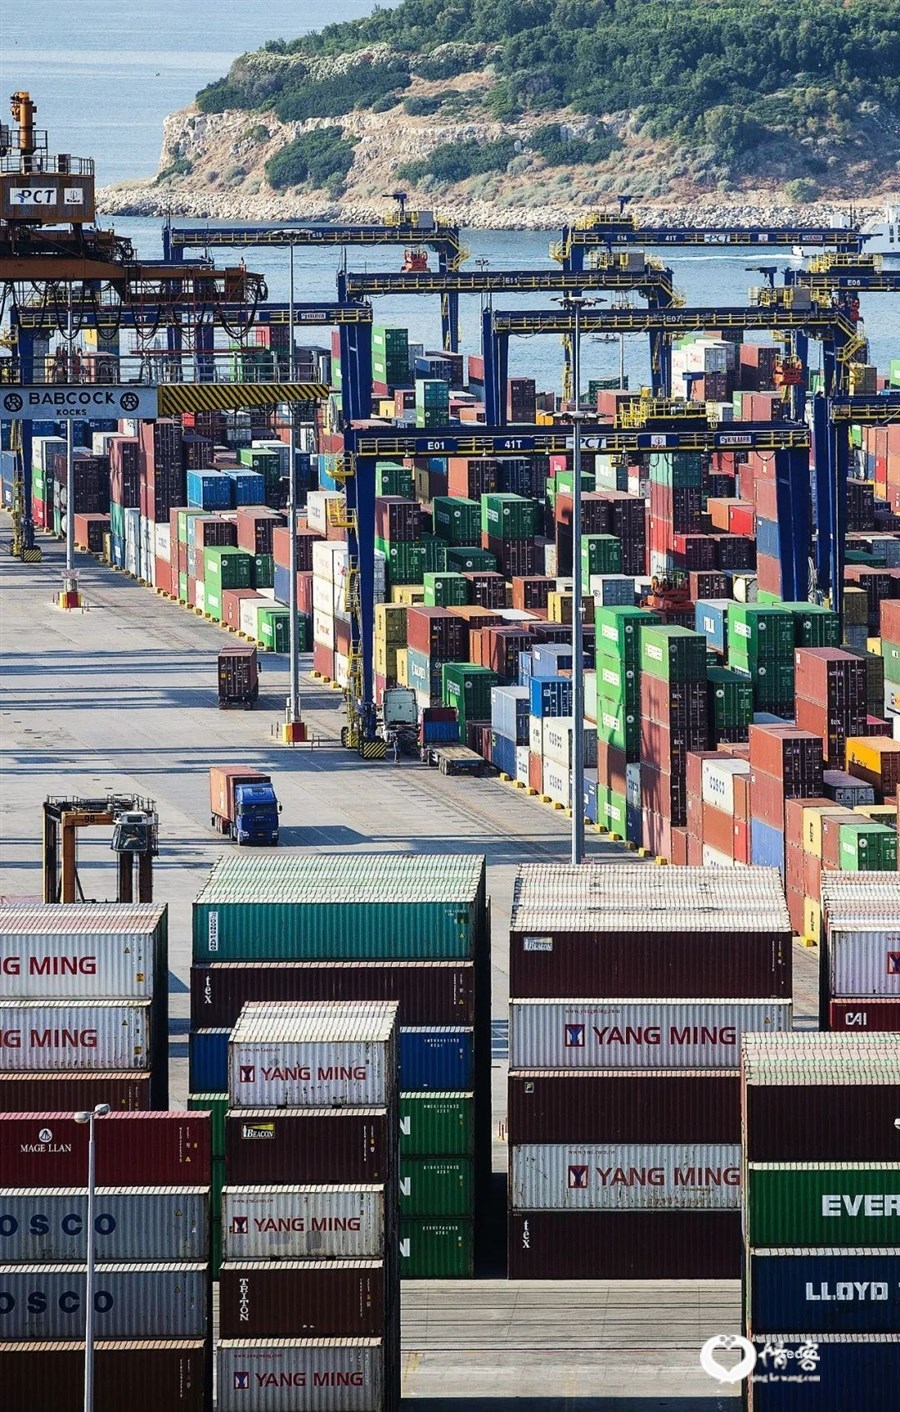 ▲ 比雷埃夫斯港为希腊最大港口，中远集团管理着该港口的两个集装箱码头 。图/视觉中国